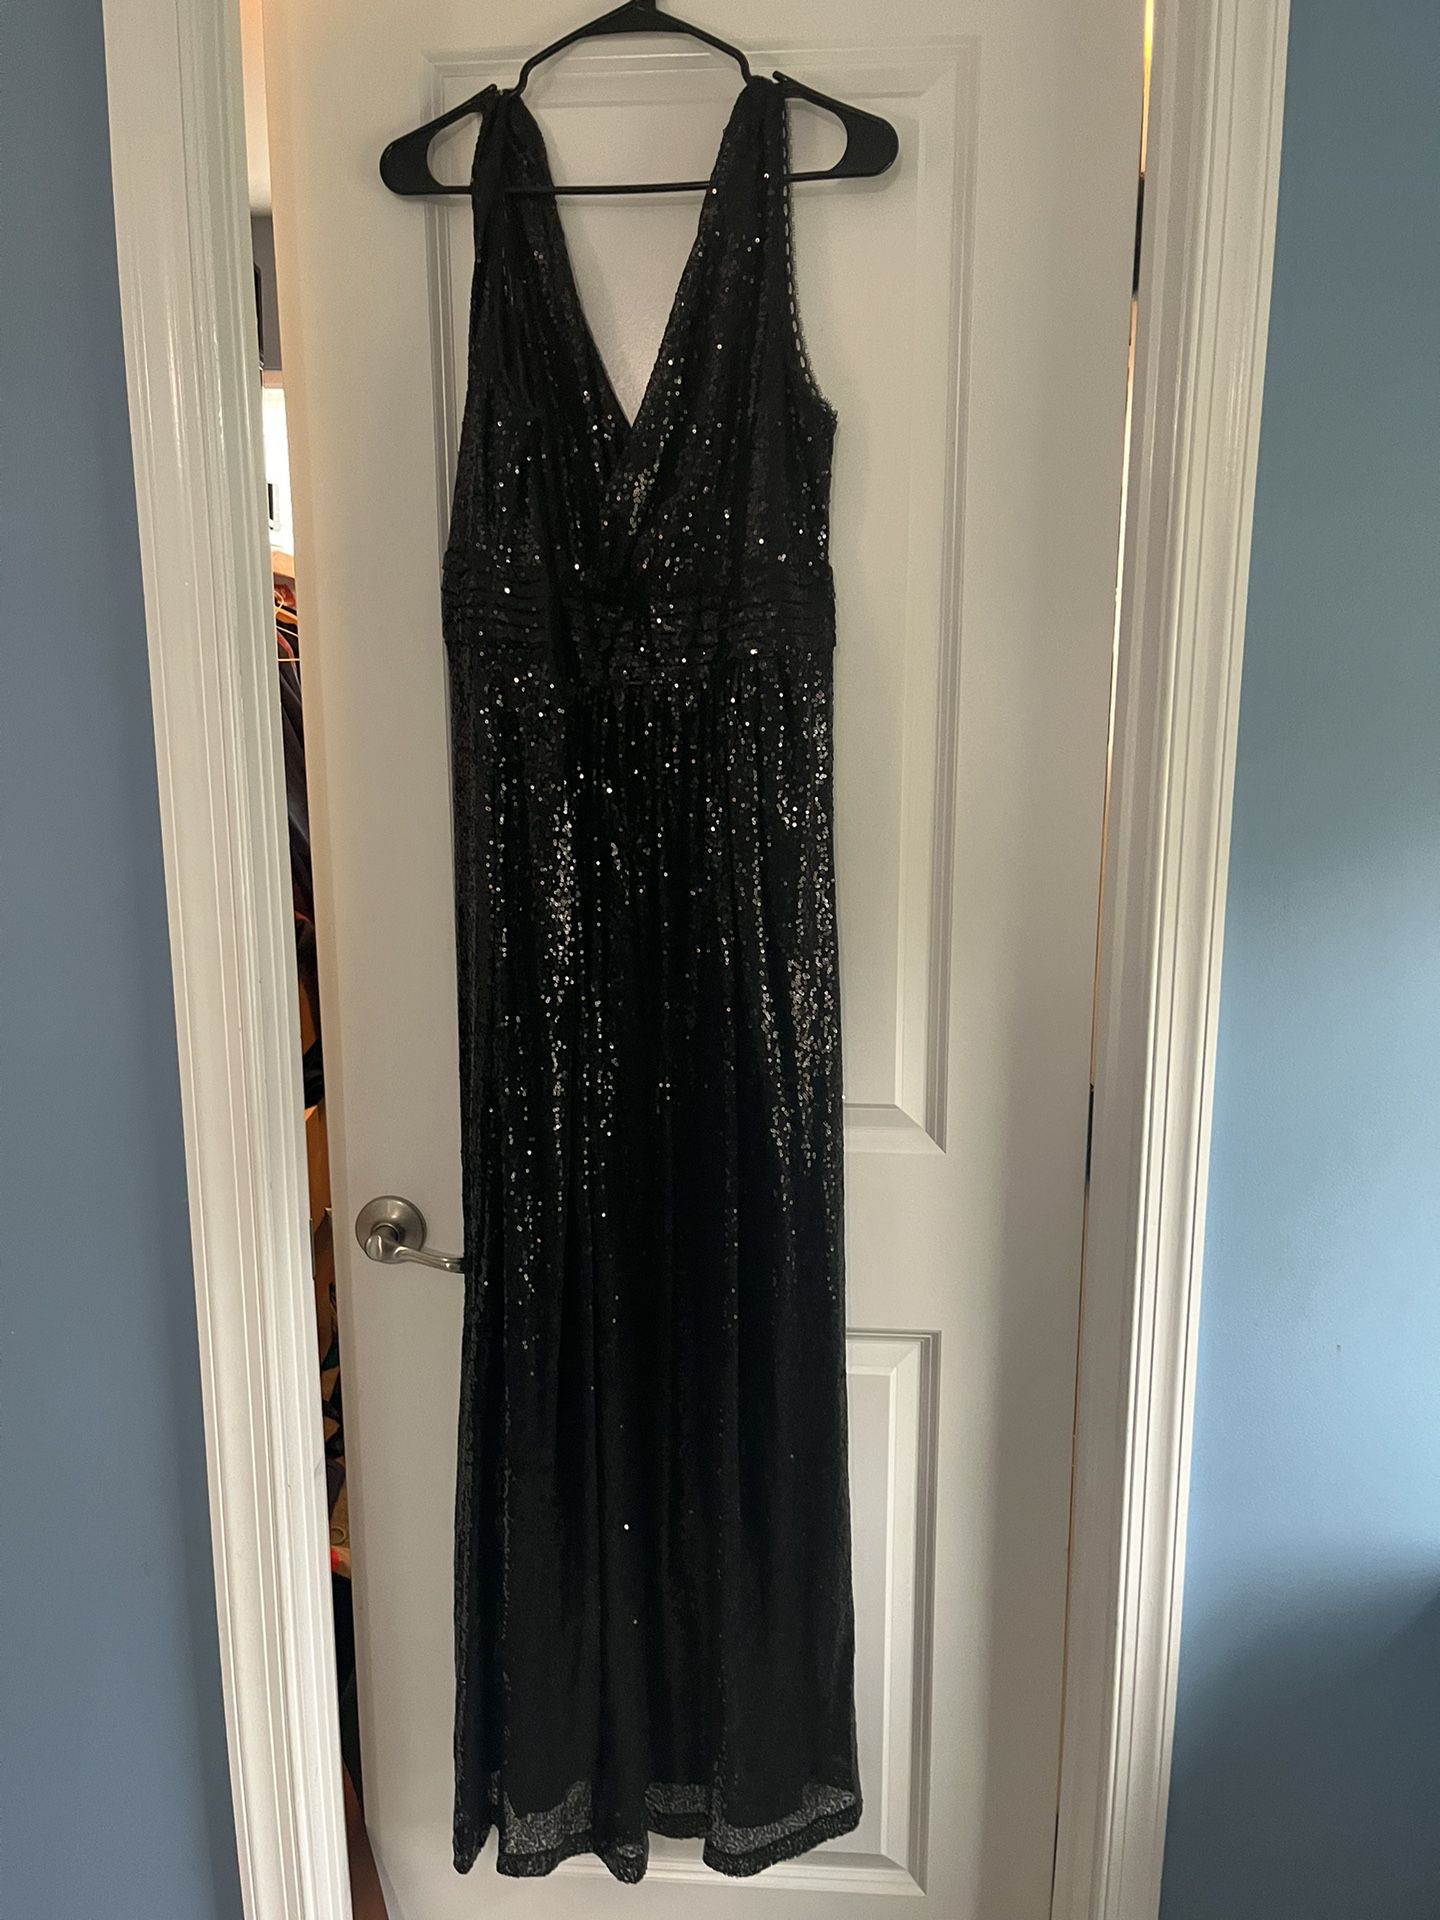 Dress Full Length Size Black Sequin Dress 